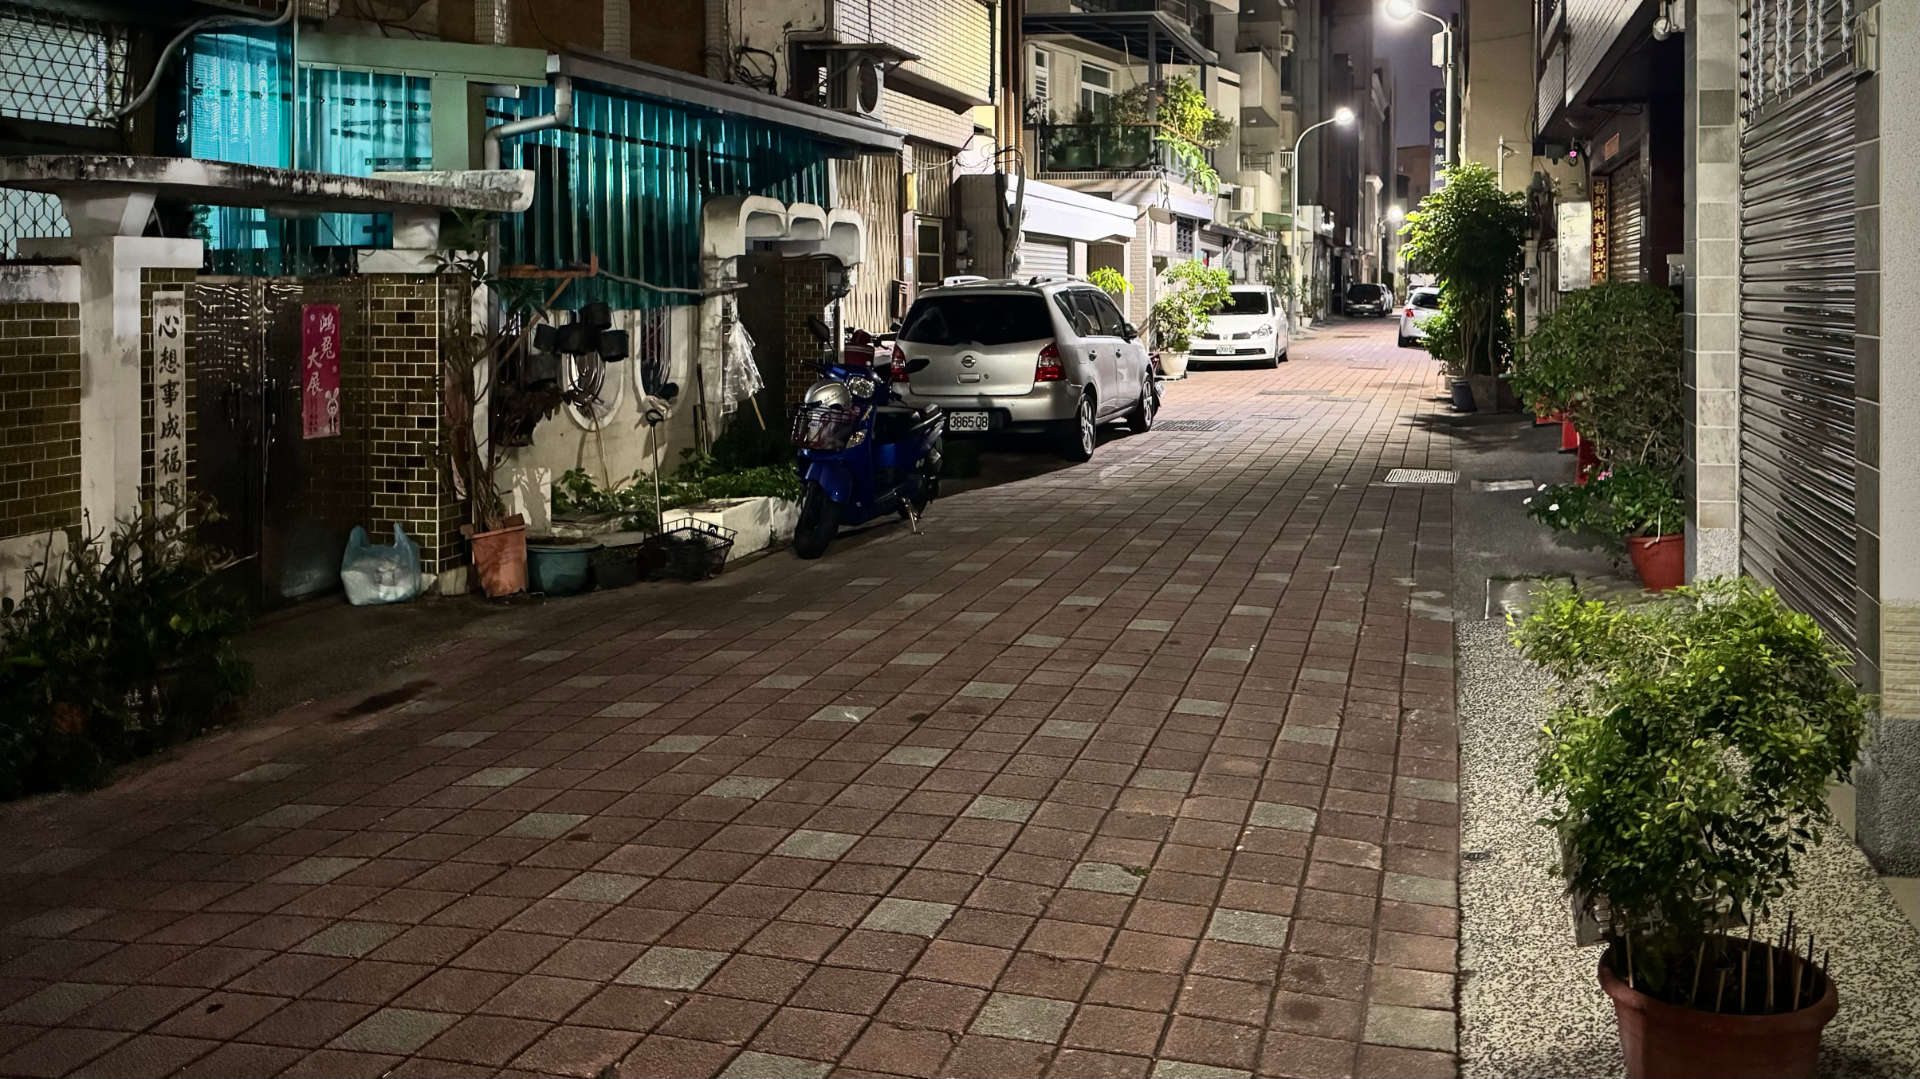 A narrow Tainan street at night.